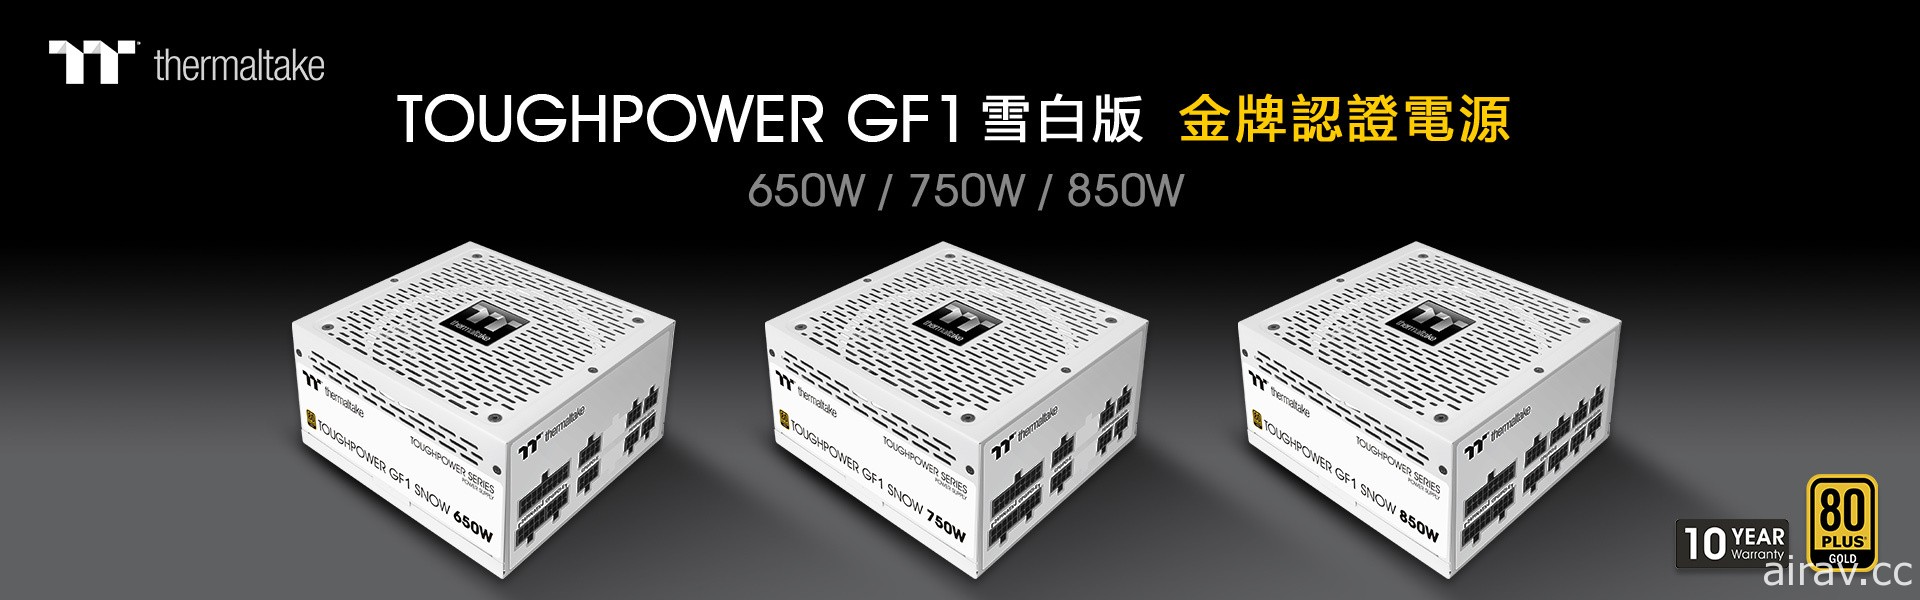 曜越推出鋼影 Toughpower GF1 金牌電源雪白版 650/750/850W